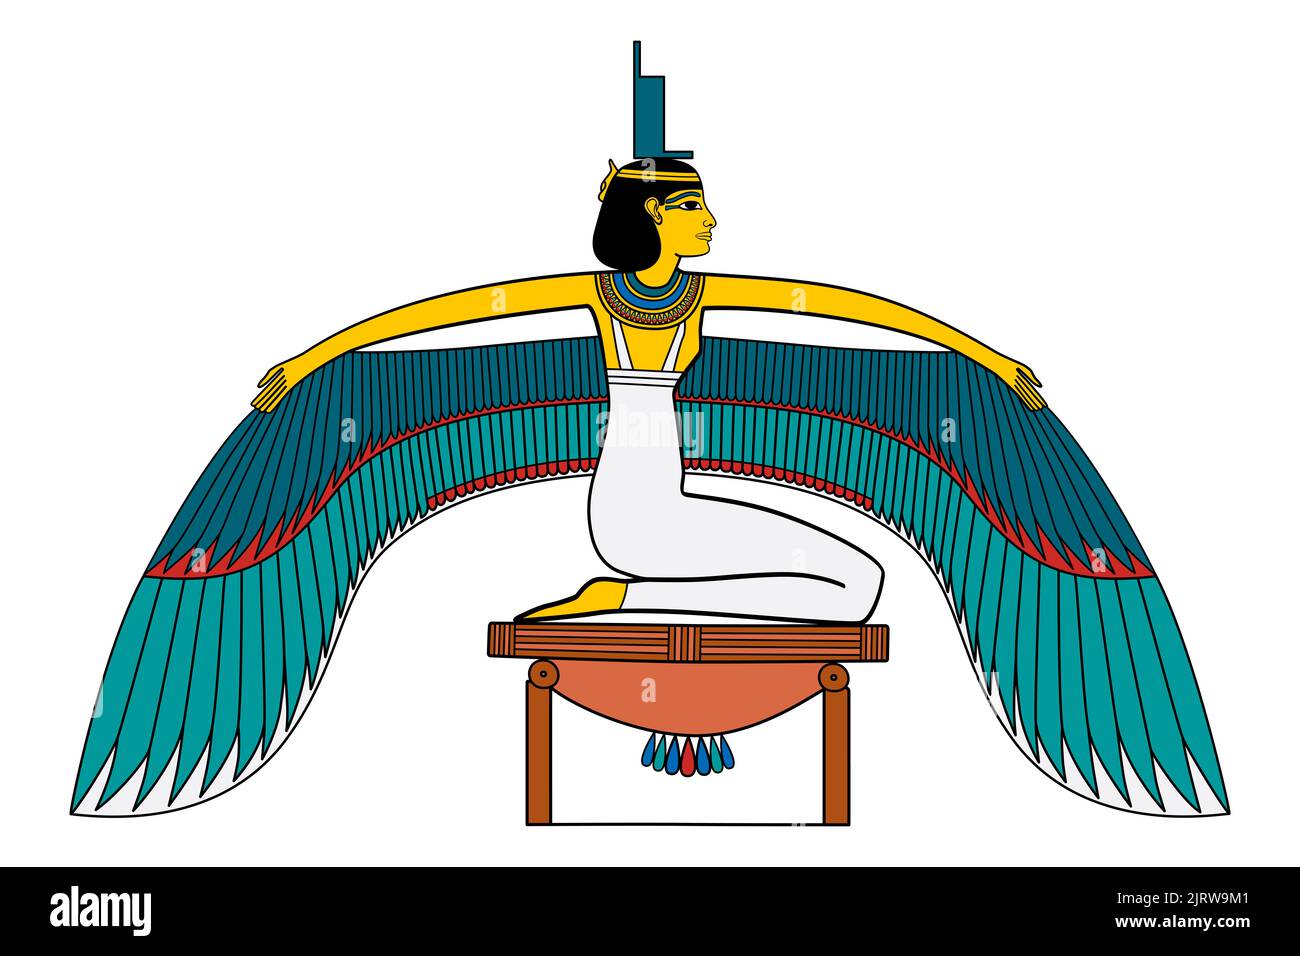 ISIS, diosa alada en la antigua religión egipcia, con el trono jeroglífico en su cabeza. En el mito y culto de Osiris resucita a su esposo Osiris. Foto de stock